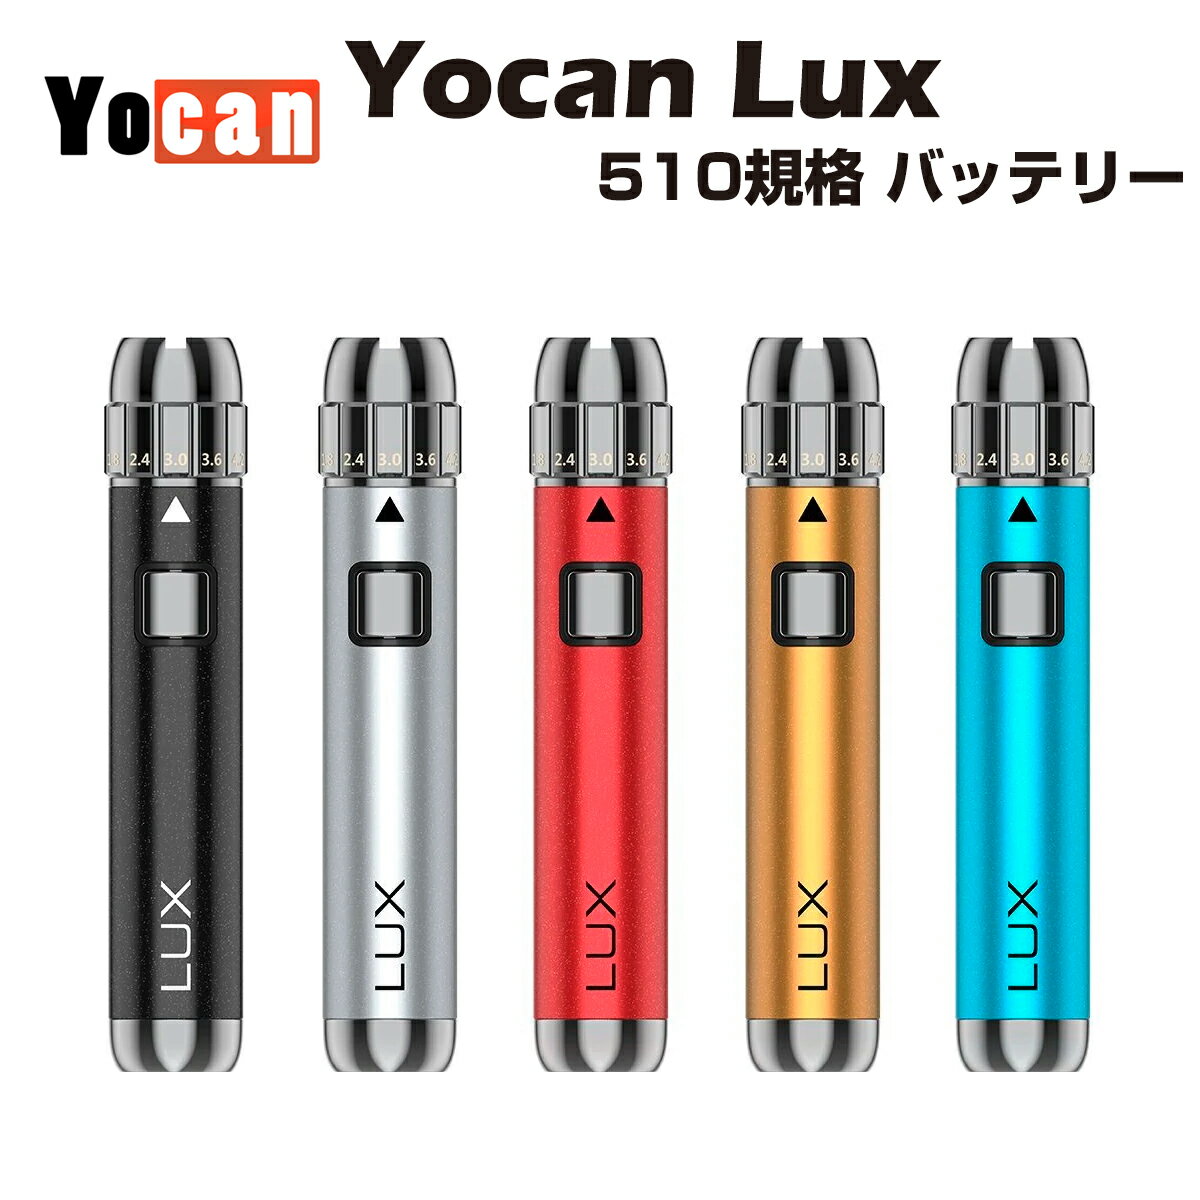 【送料無料】 Yocan LUX VV Battery 400mAh 510規格 モッド 低電圧 ラ ...